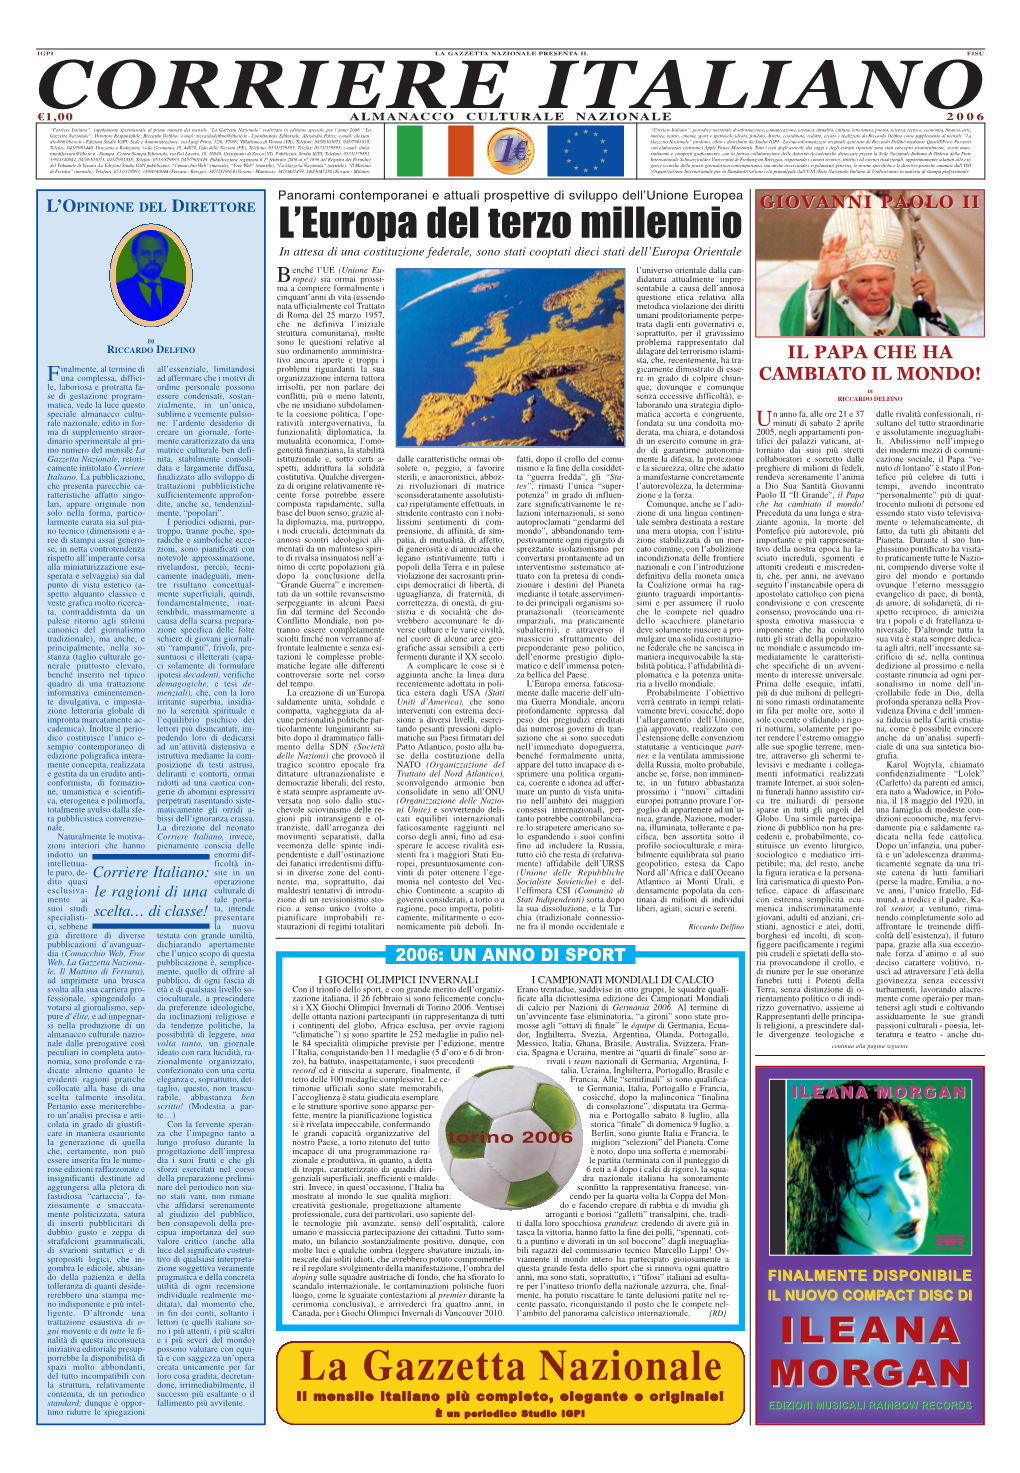 Corriere Italiano”: Supplemento Sperimentale Al Primo Numero Del Mensile “La Gazzetta Nazionale” Realizzato in Edizione Speciale Per L’Anno 2006